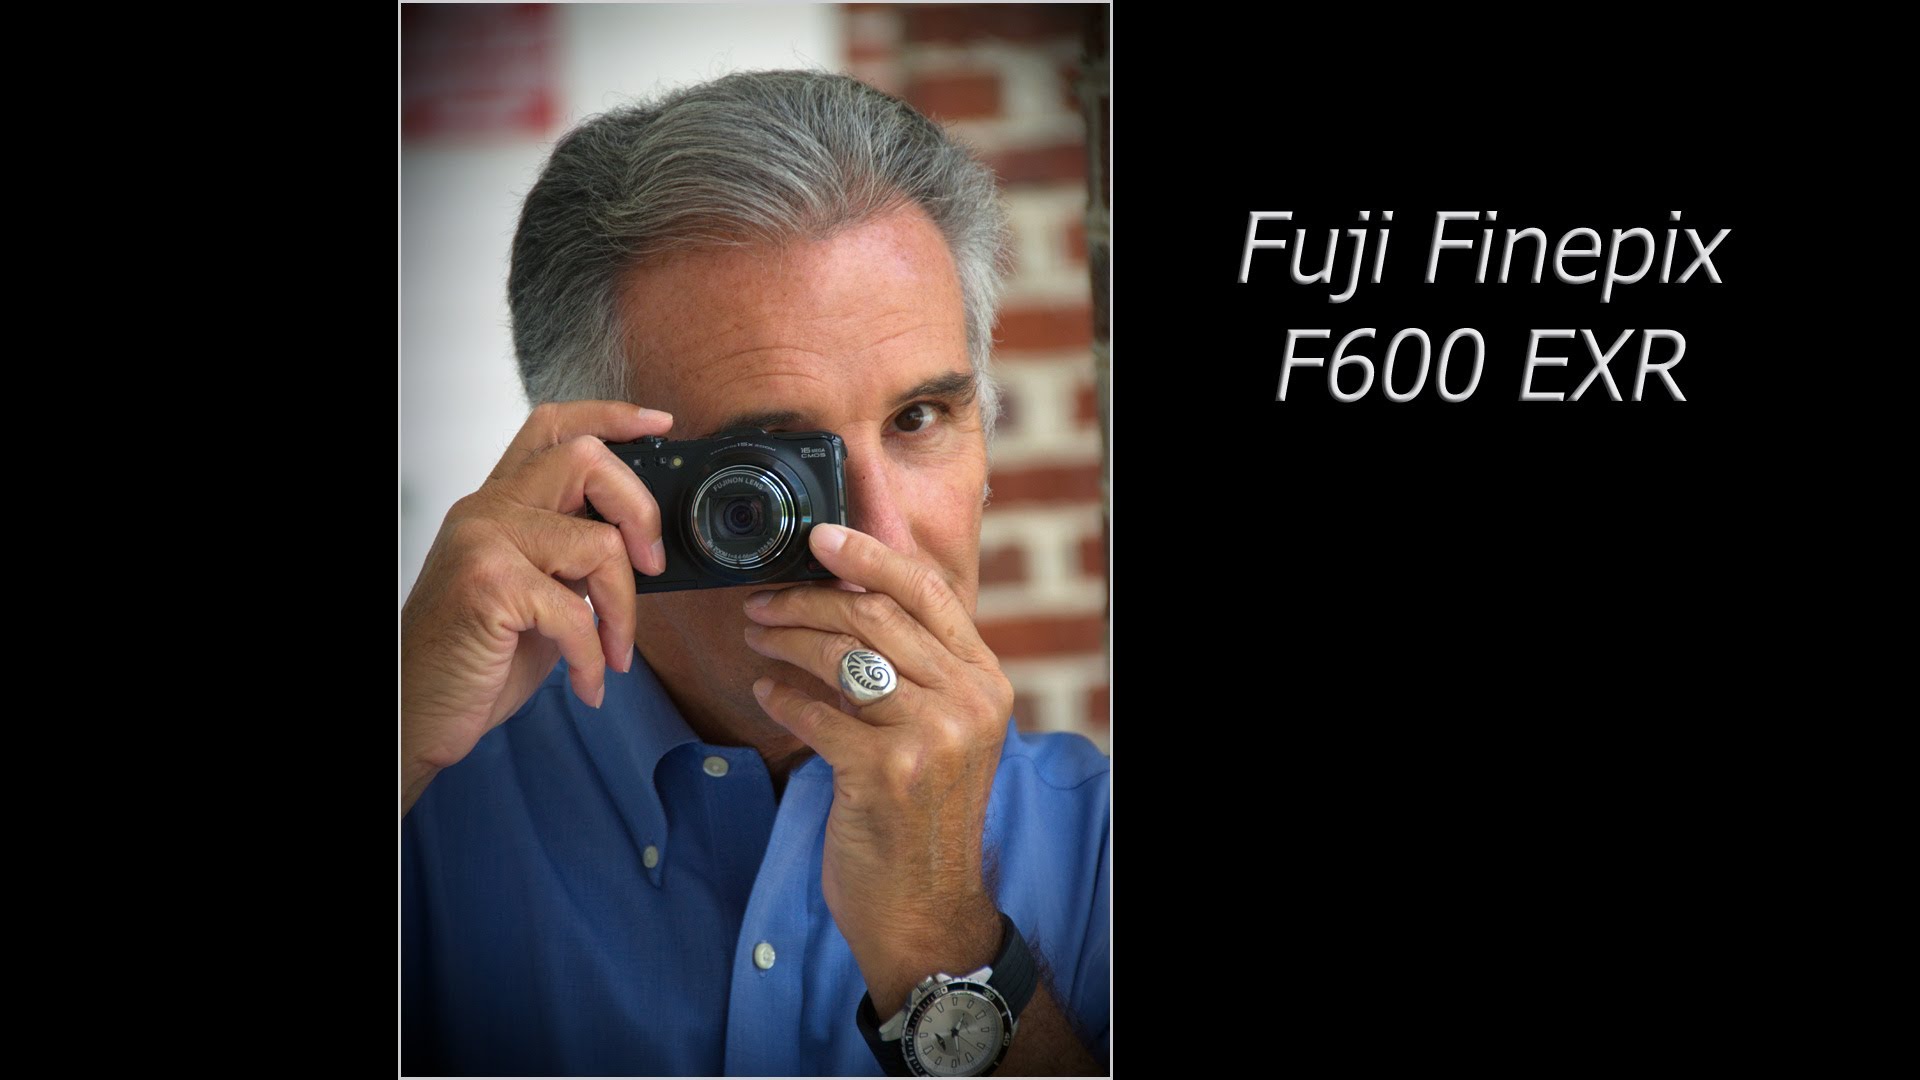 Fuji Finepix F600 EXR great compact camera Part 2